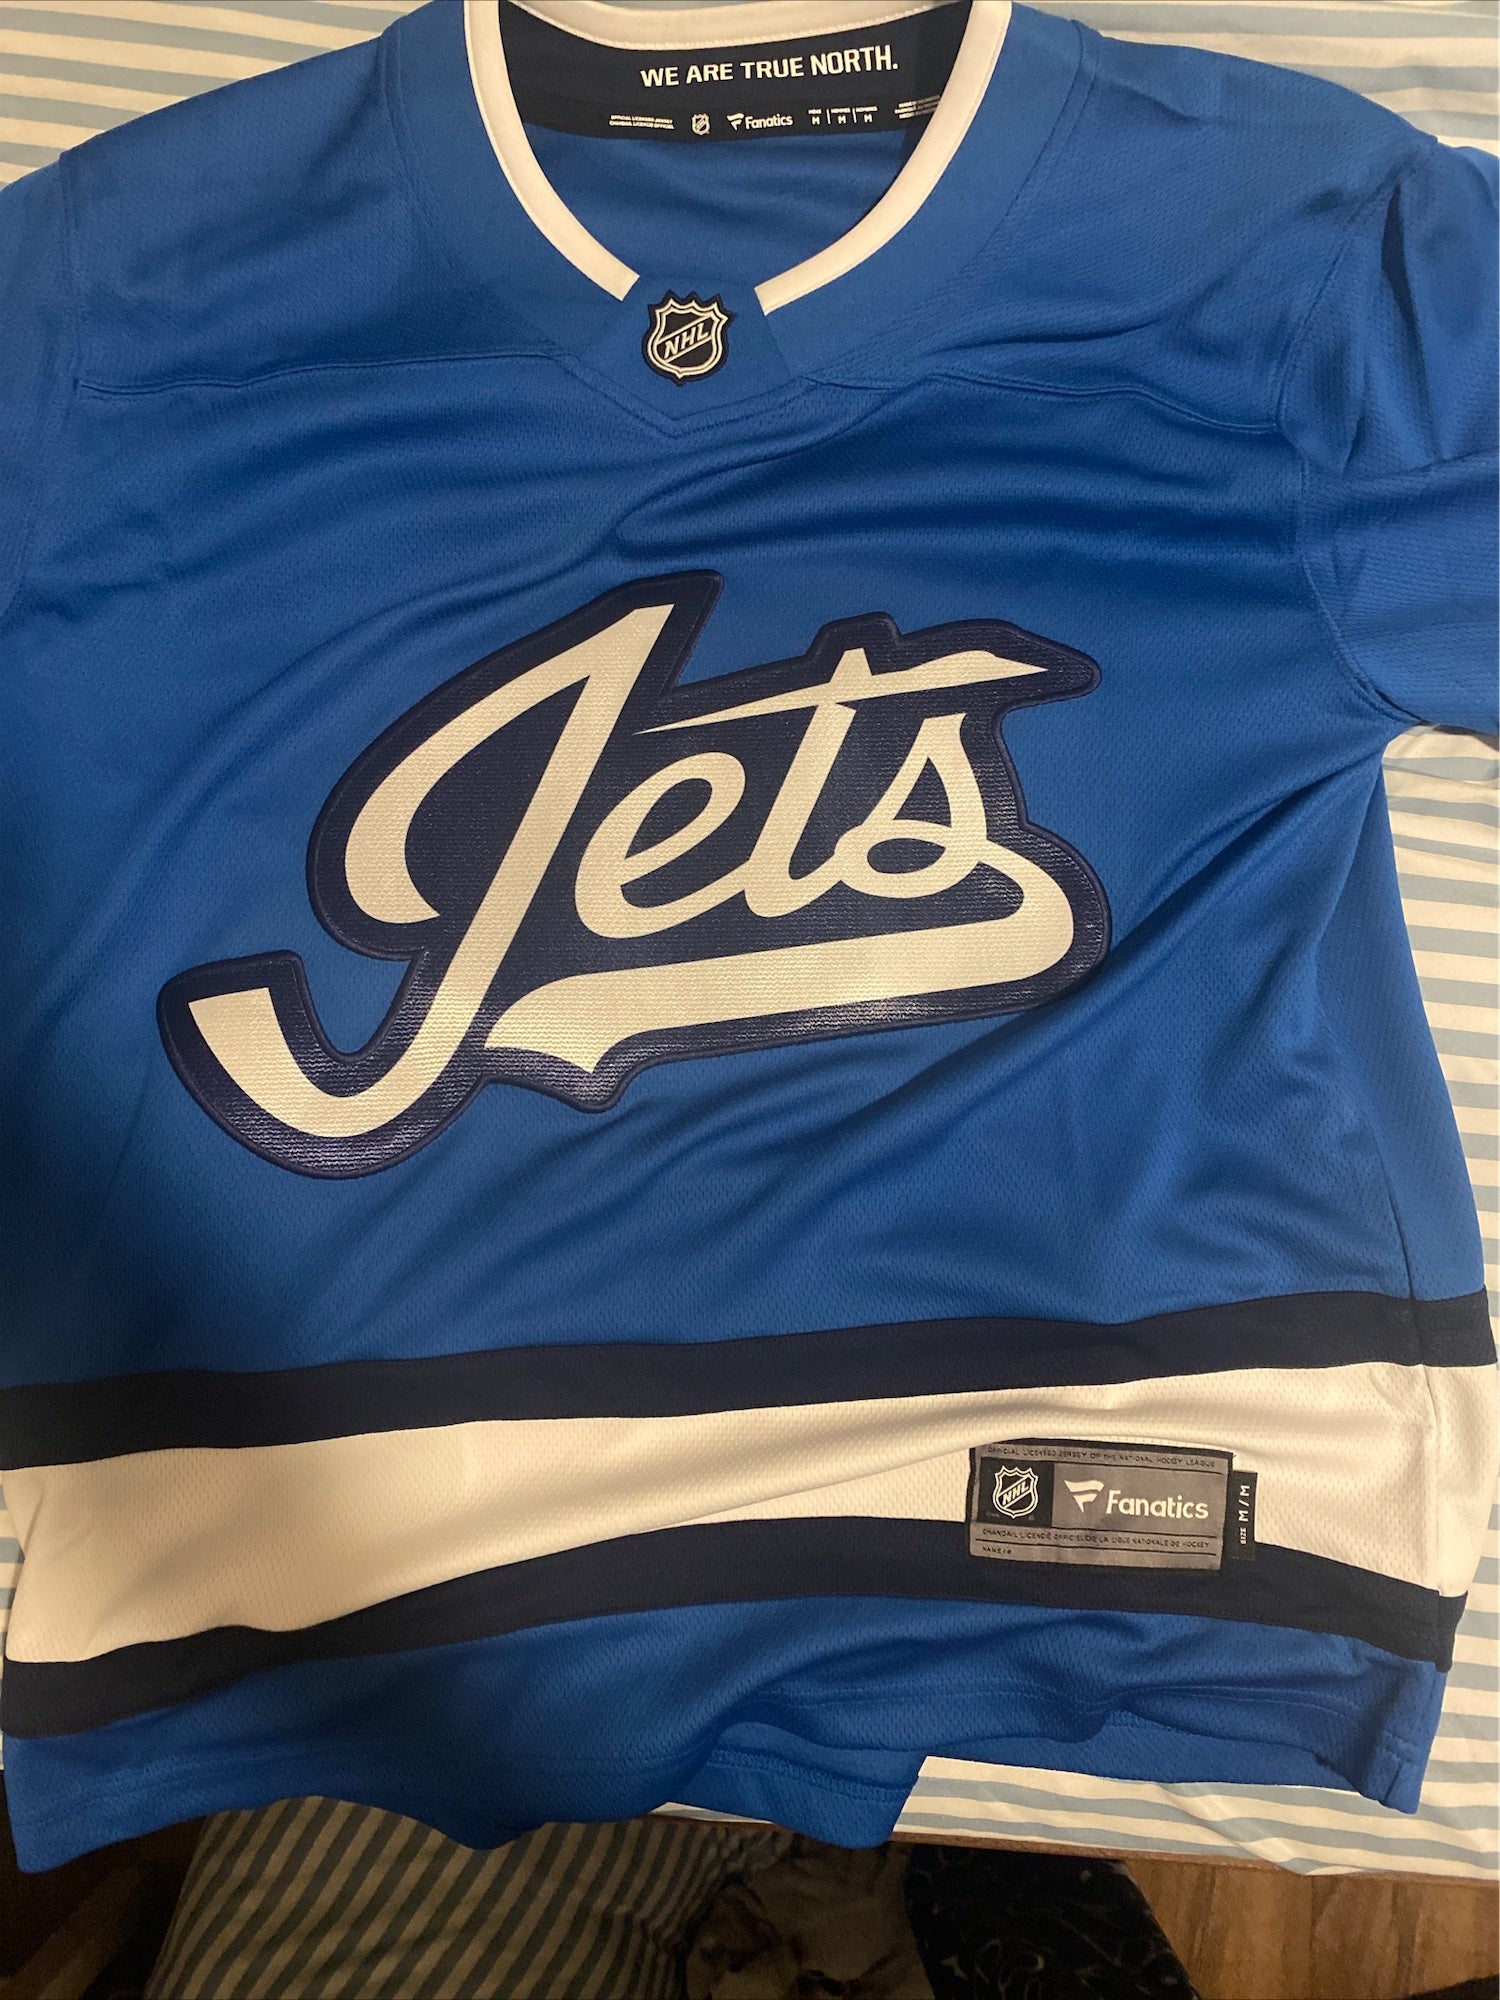 Winnipeg Jets Jerseys, Jets Jersey Deals, Jets Breakaway Jerseys